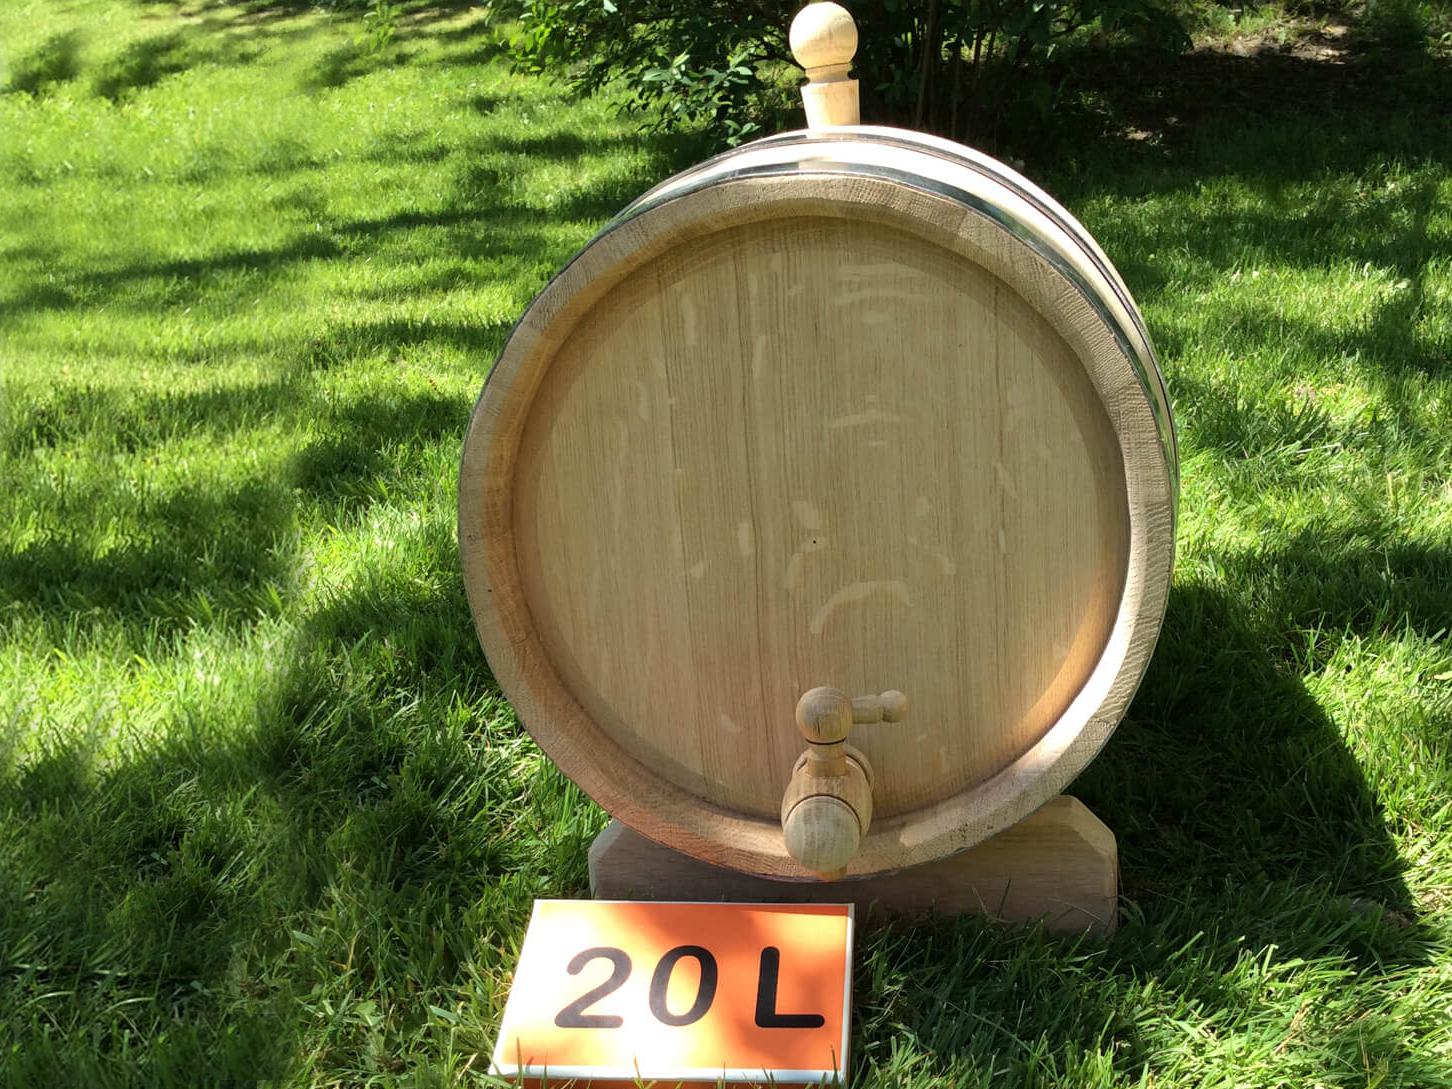 Oak barrel 20L